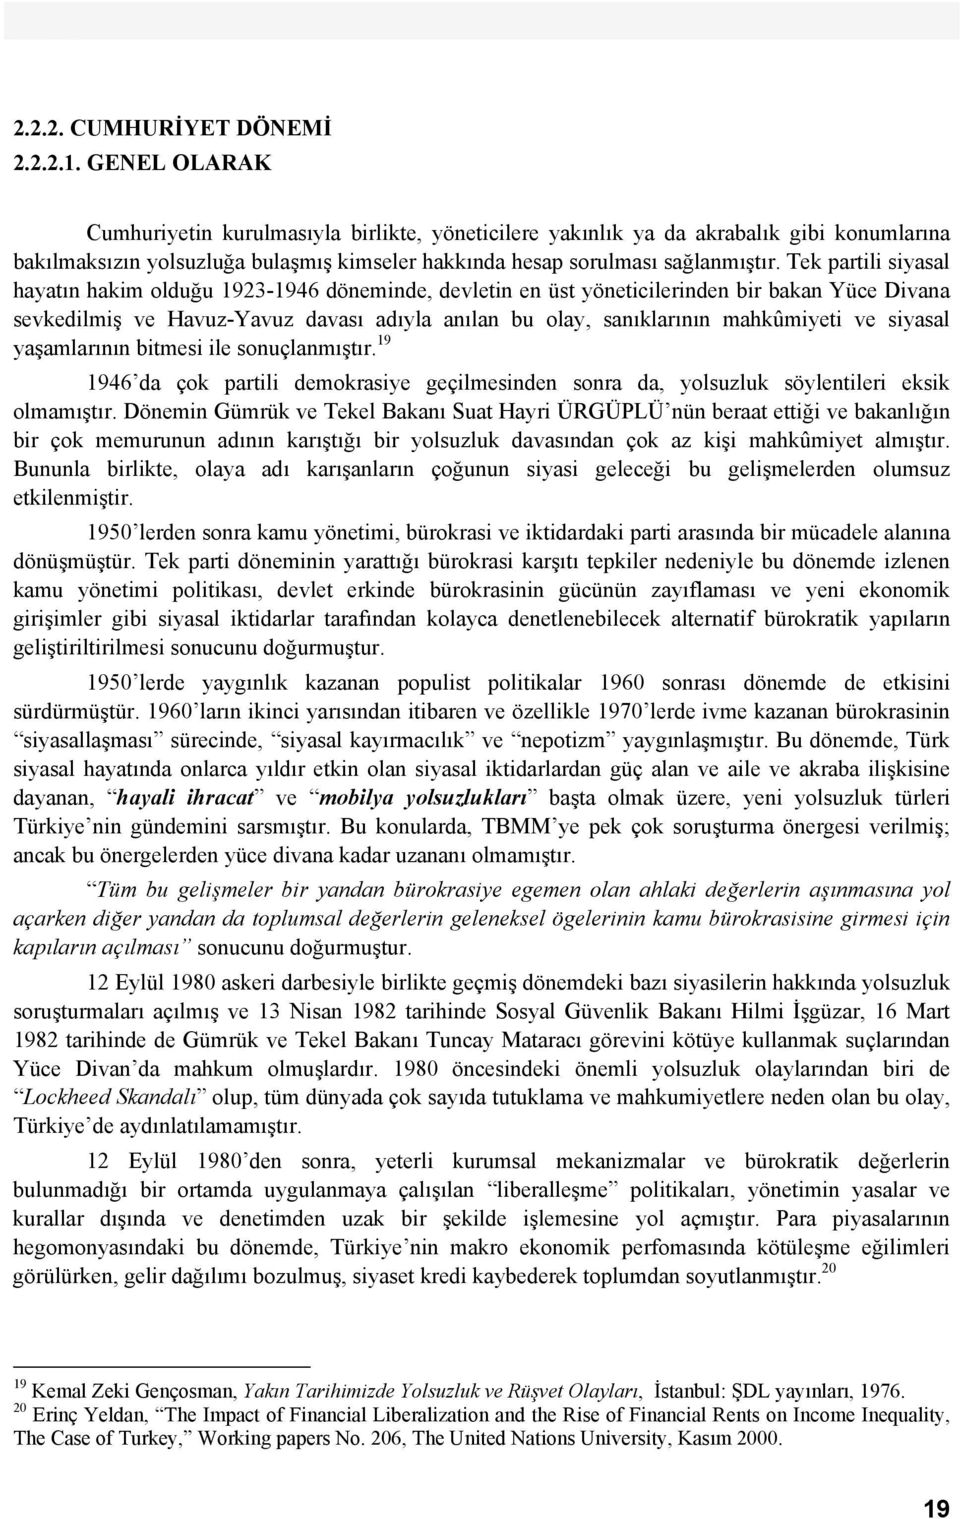 Tek partili siyasal hayatın hakim olduğu 1923-1946 döneminde, devletin en üst yöneticilerinden bir bakan Yüce Divana sevkedilmiş ve Havuz-Yavuz davası adıyla anılan bu olay, sanıklarının mahkûmiyeti